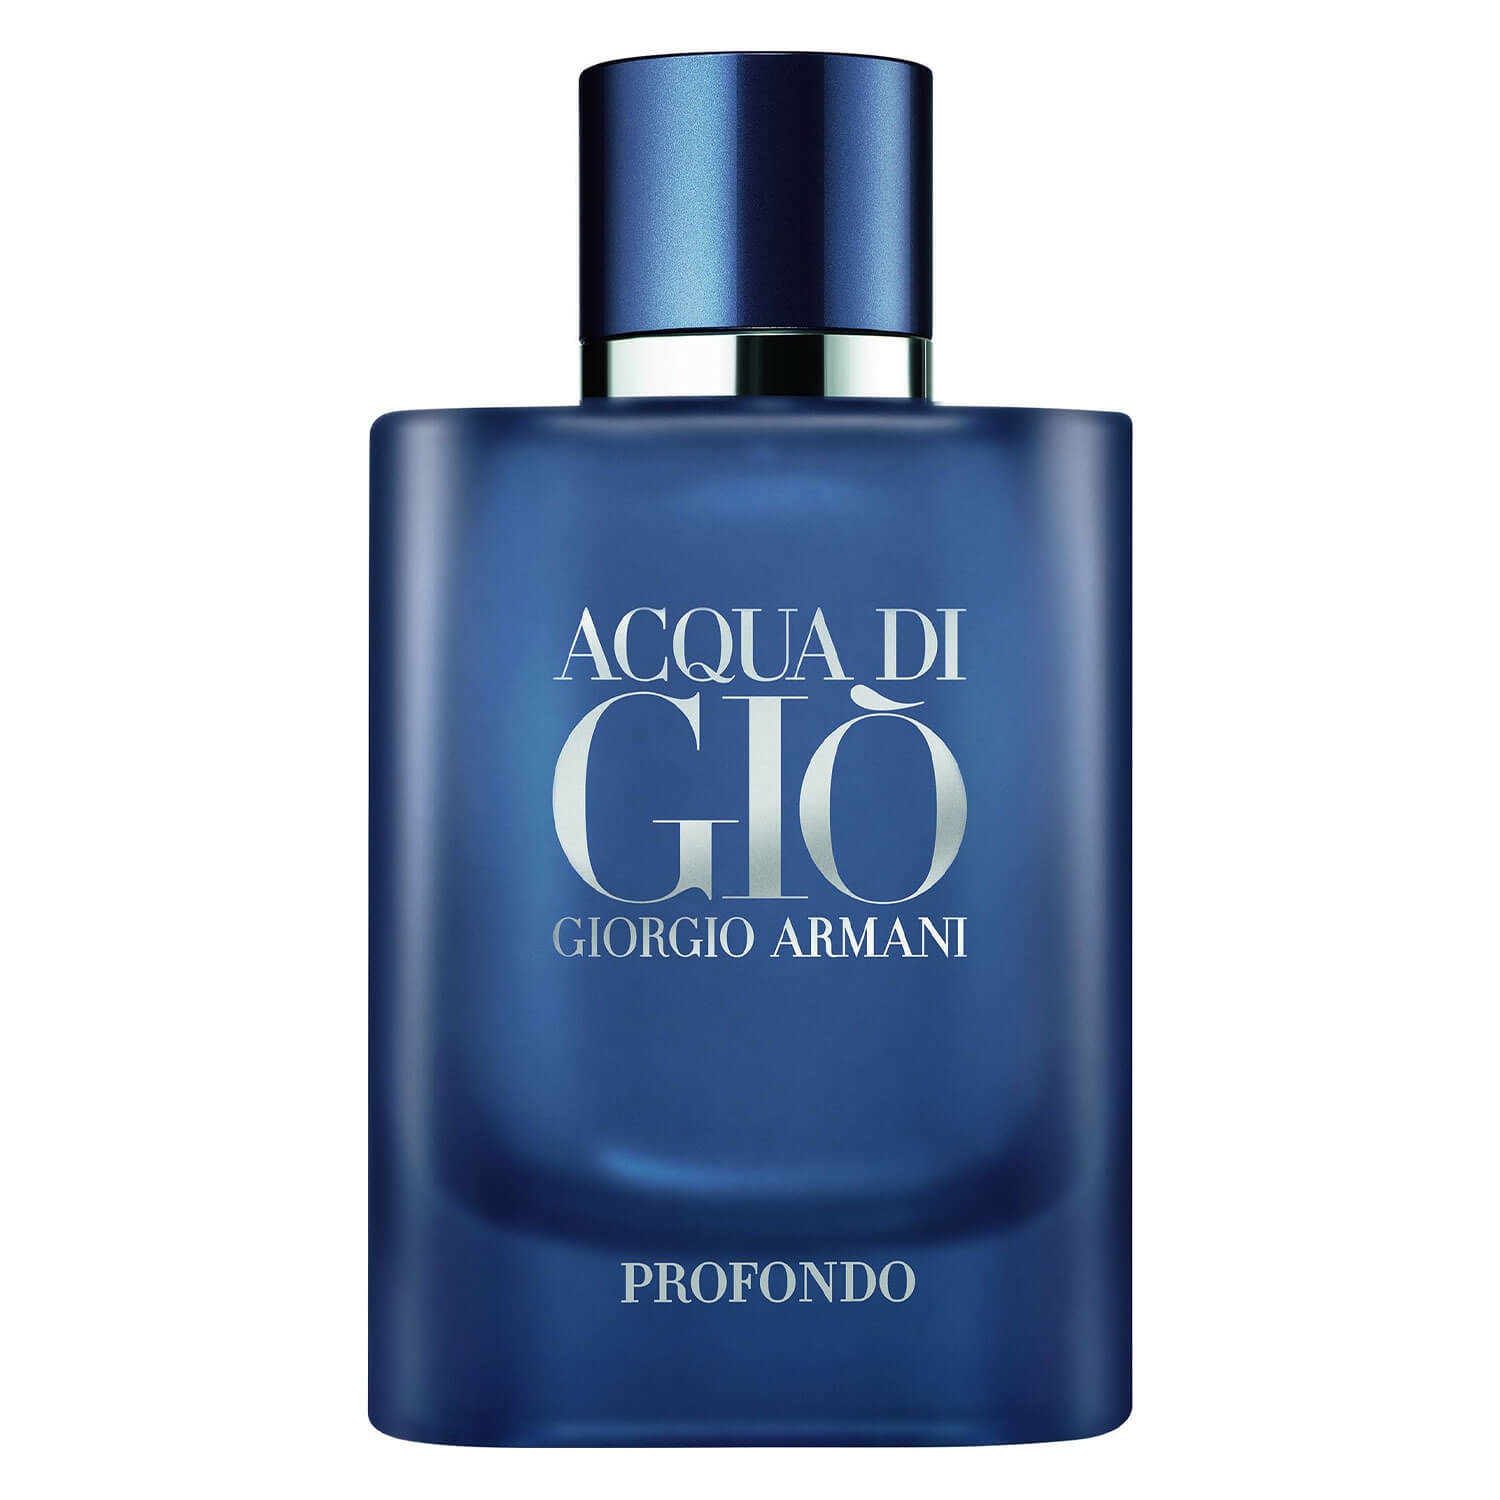 Product image from Acqua di Giò - Profondo Eau de Parfum